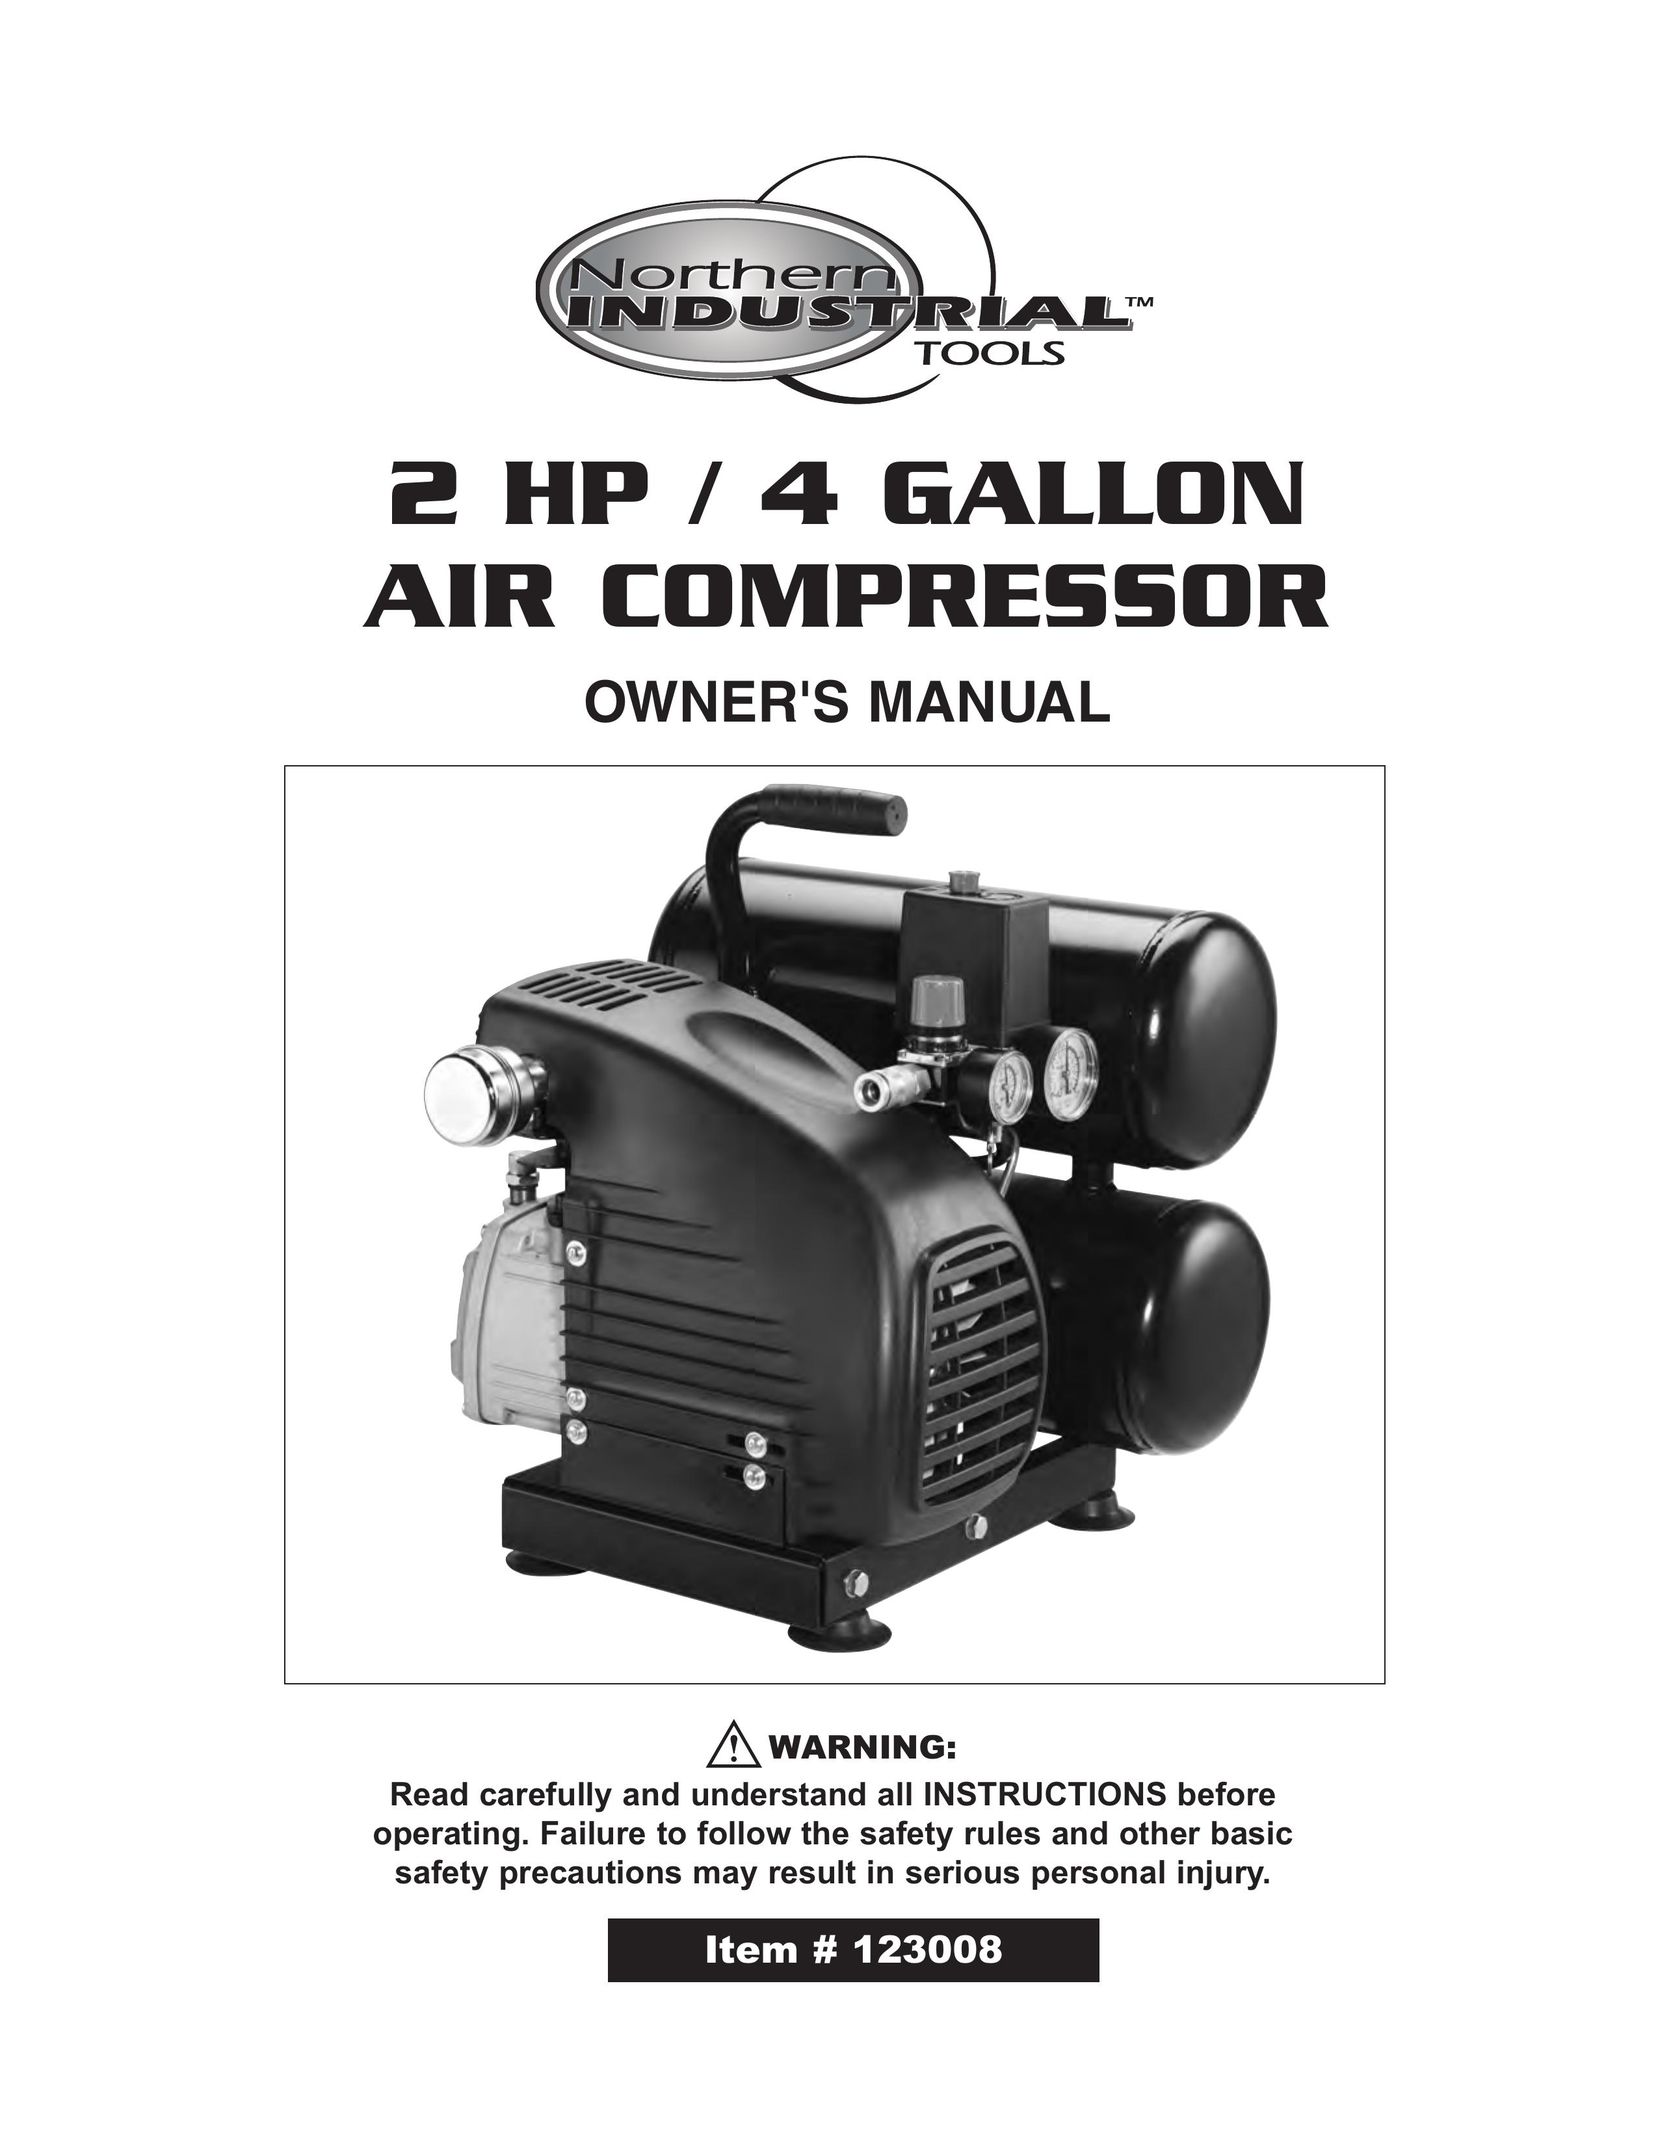 Northern Industrial Tools 2 HP / 4 GALLON AIR COMPRESSOR Air Compressor User Manual